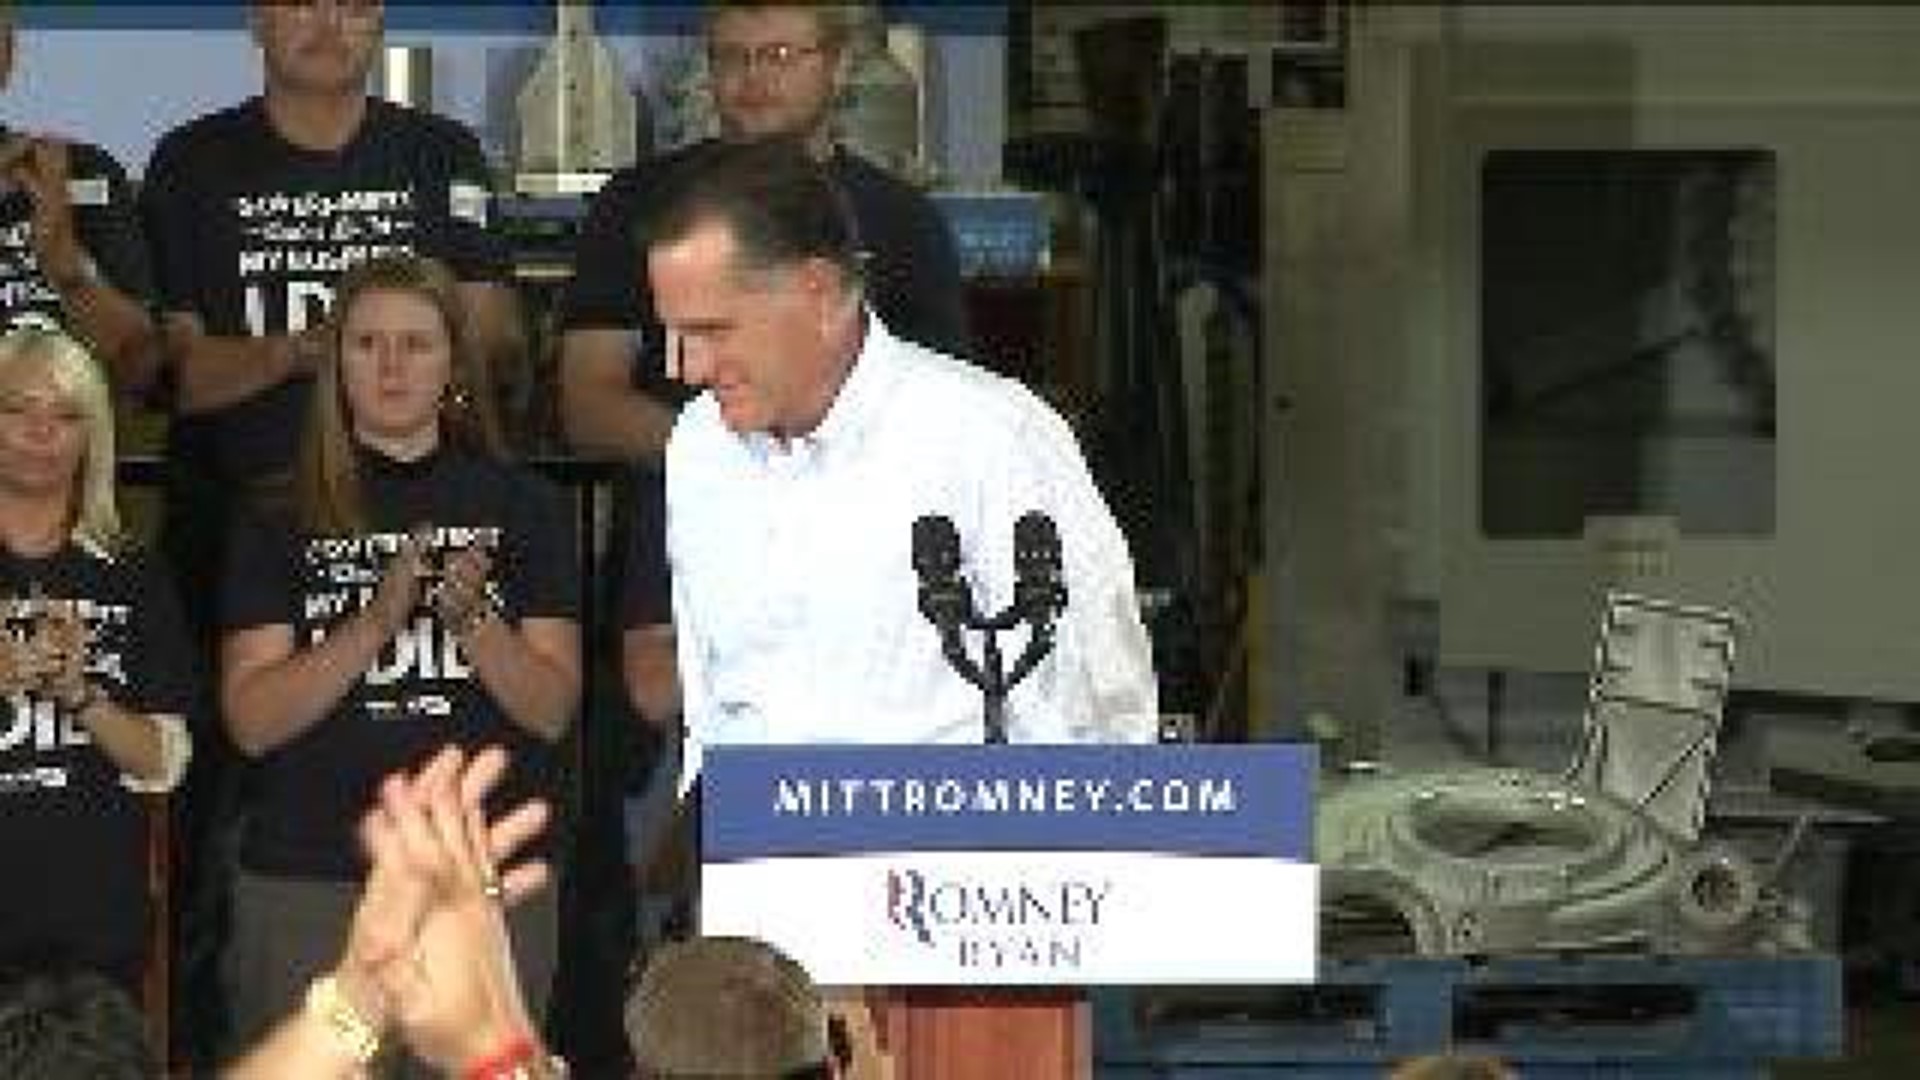 Romney in Bettendorf Clip 3 of 3